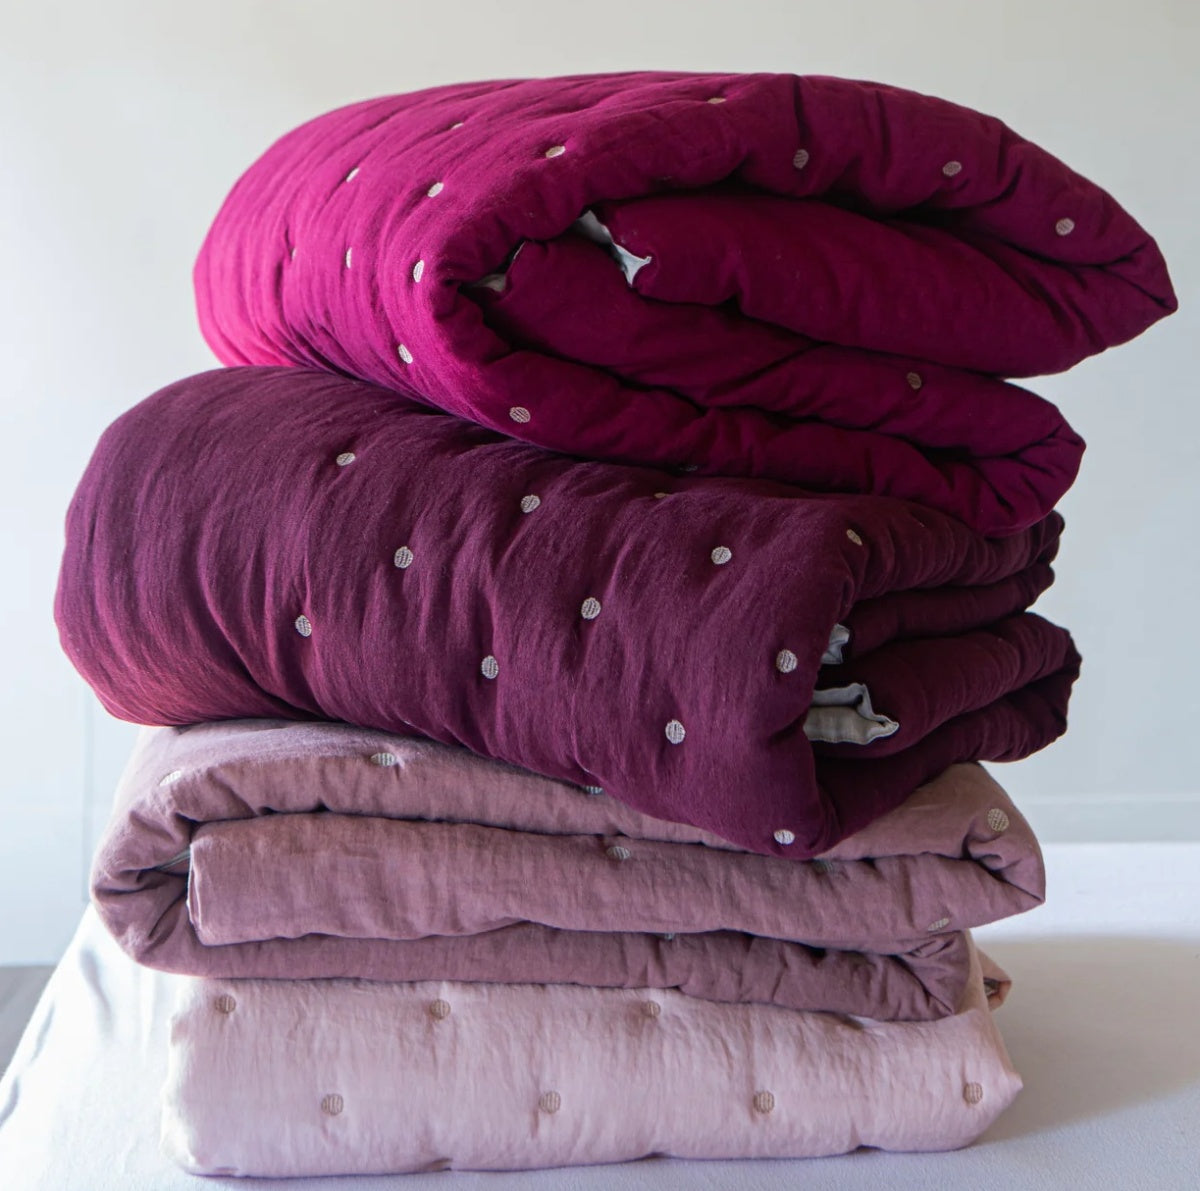 Once Milano luxusní lněný quilt přehoz na postel 